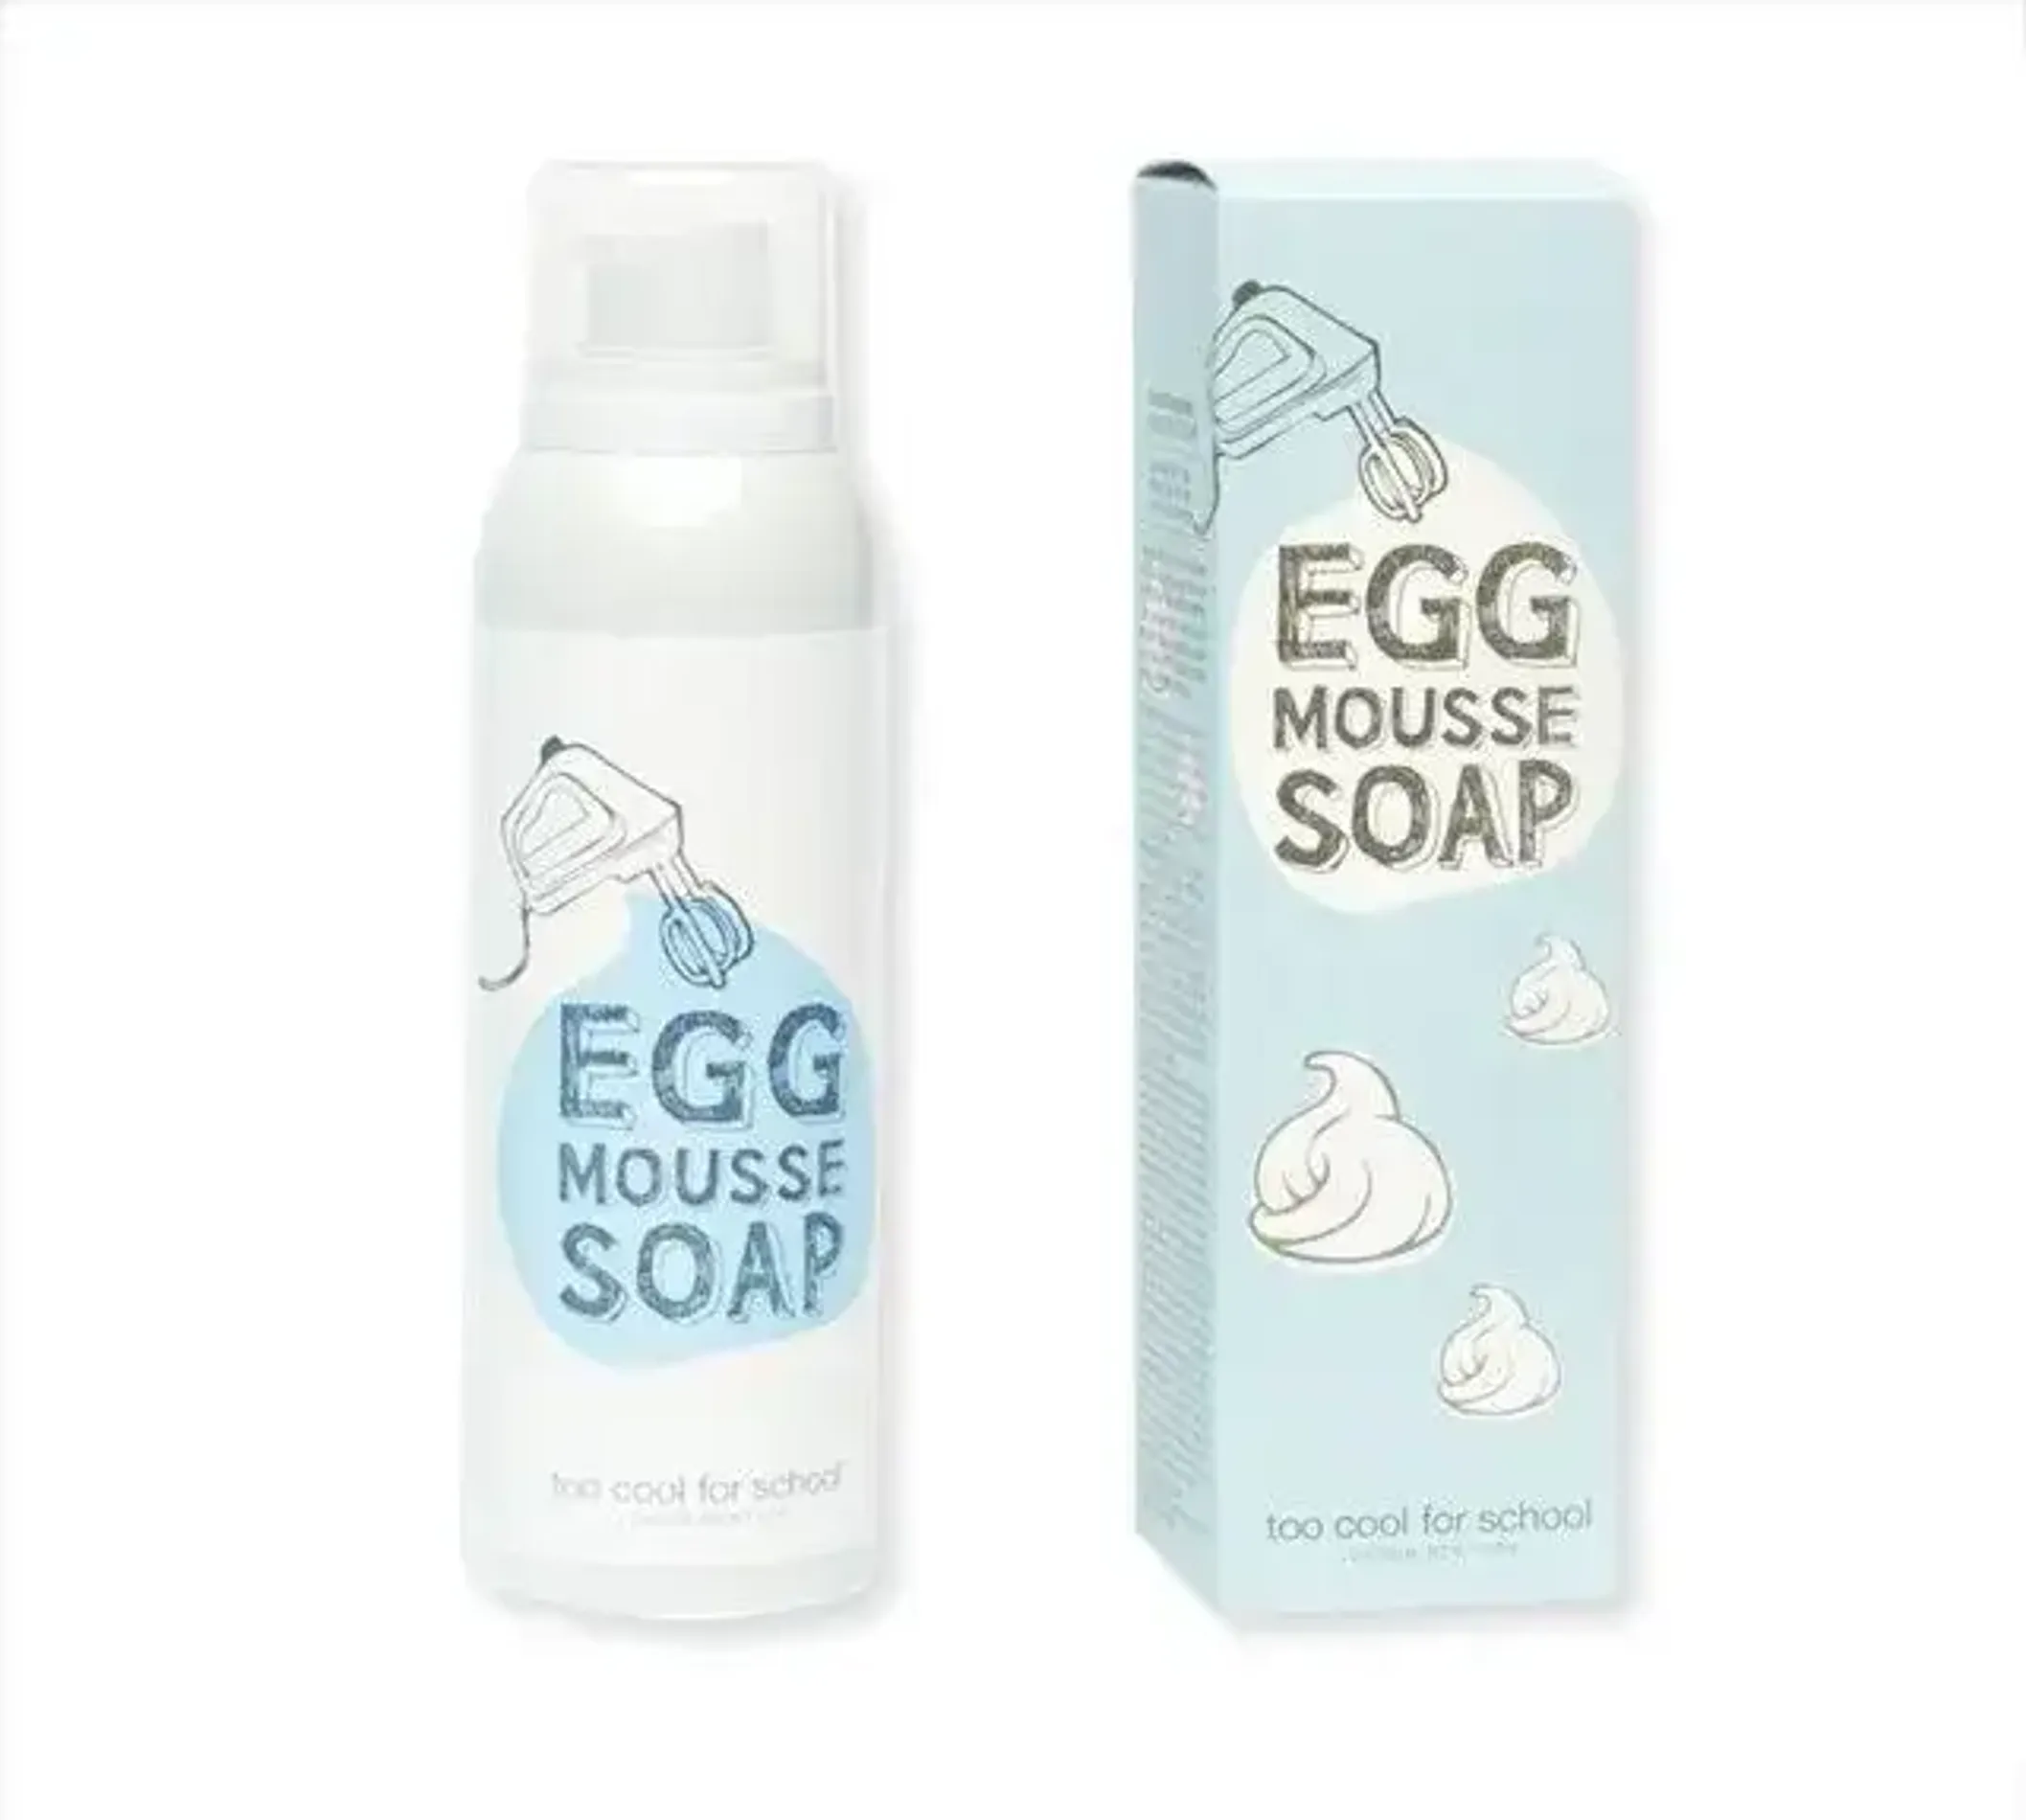 sua-rua-mat-too-cool-for-school-egg-mousse-soap-150ml-4